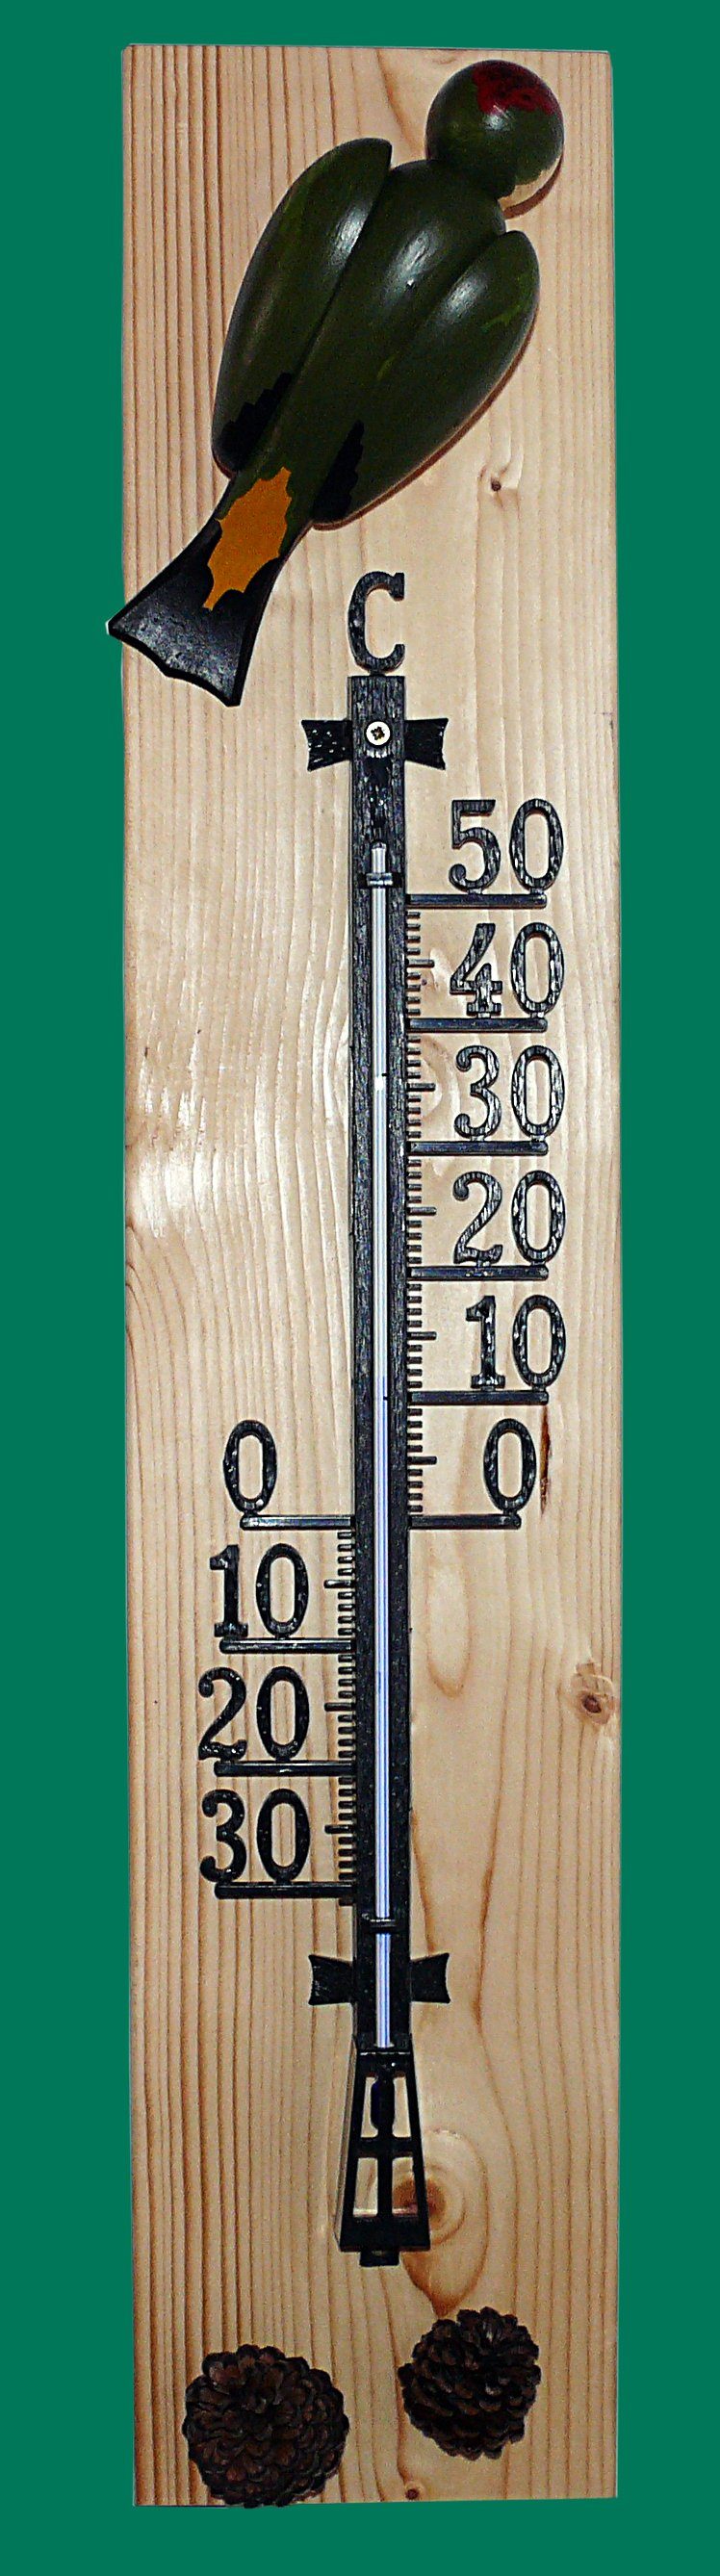 Gartenfigur Thermometer Grünspecht 72cm NEU